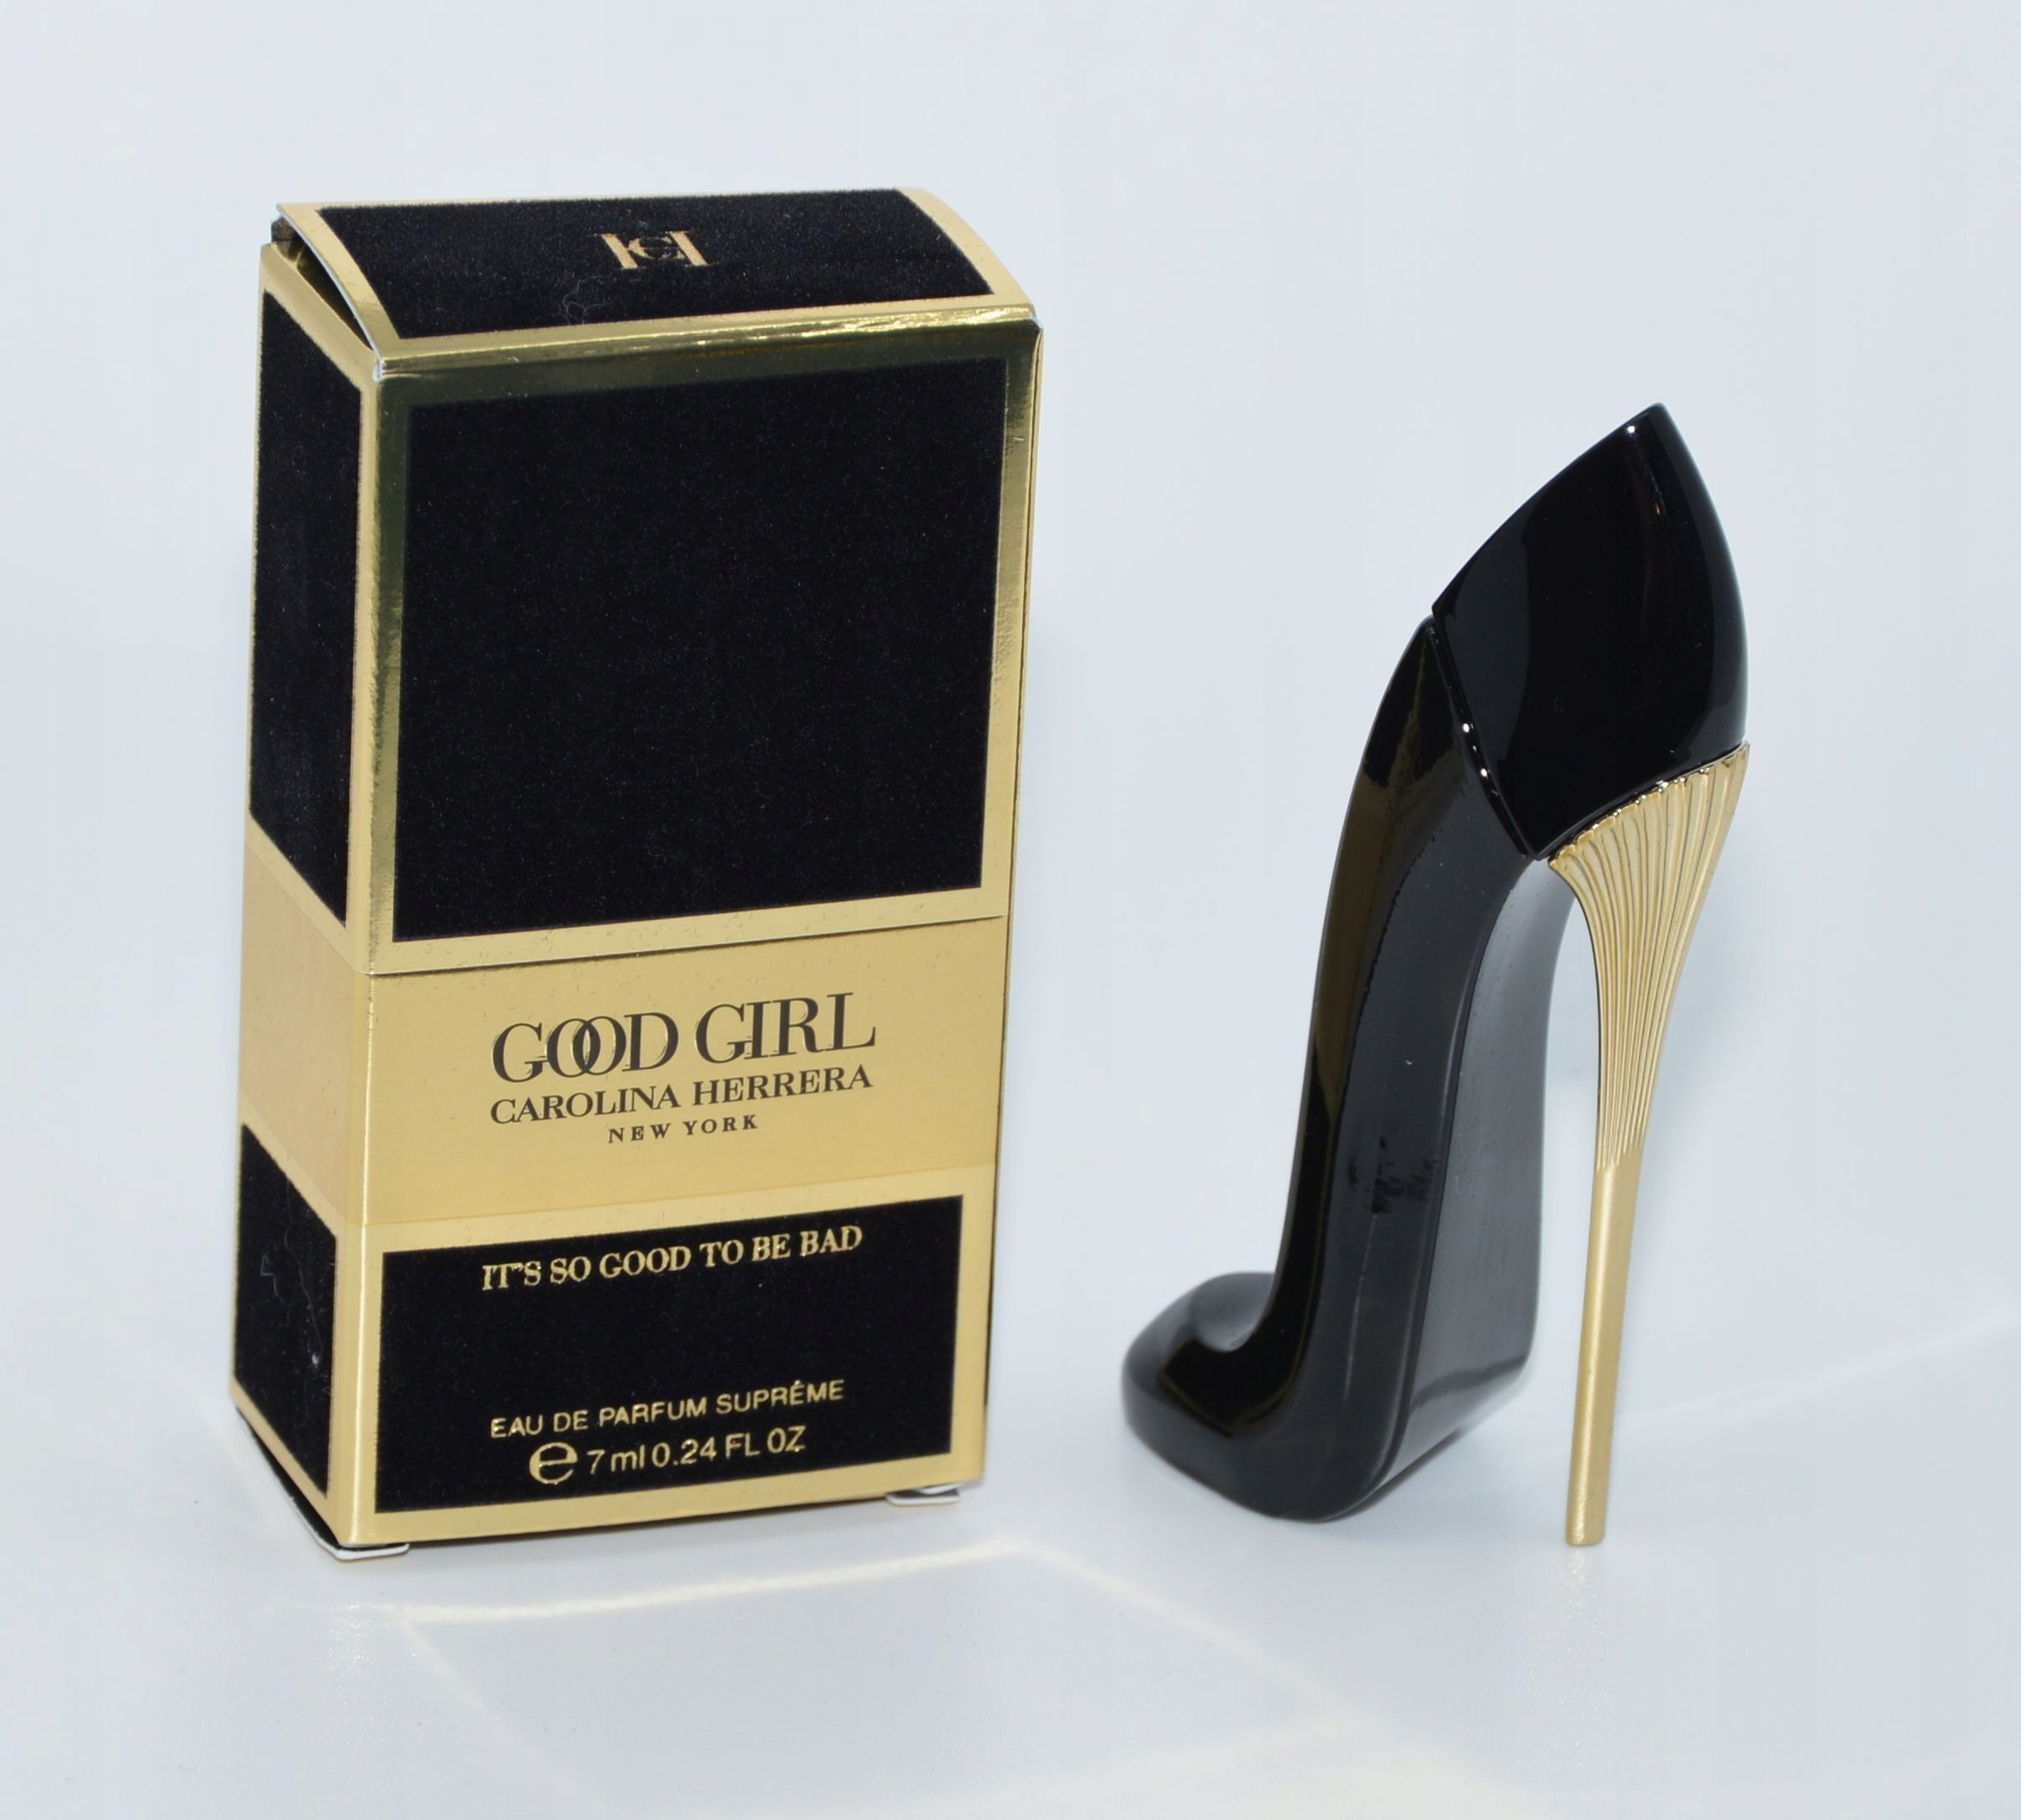 Good Girl Eau de Parfum Supreme - Carolina Herrera